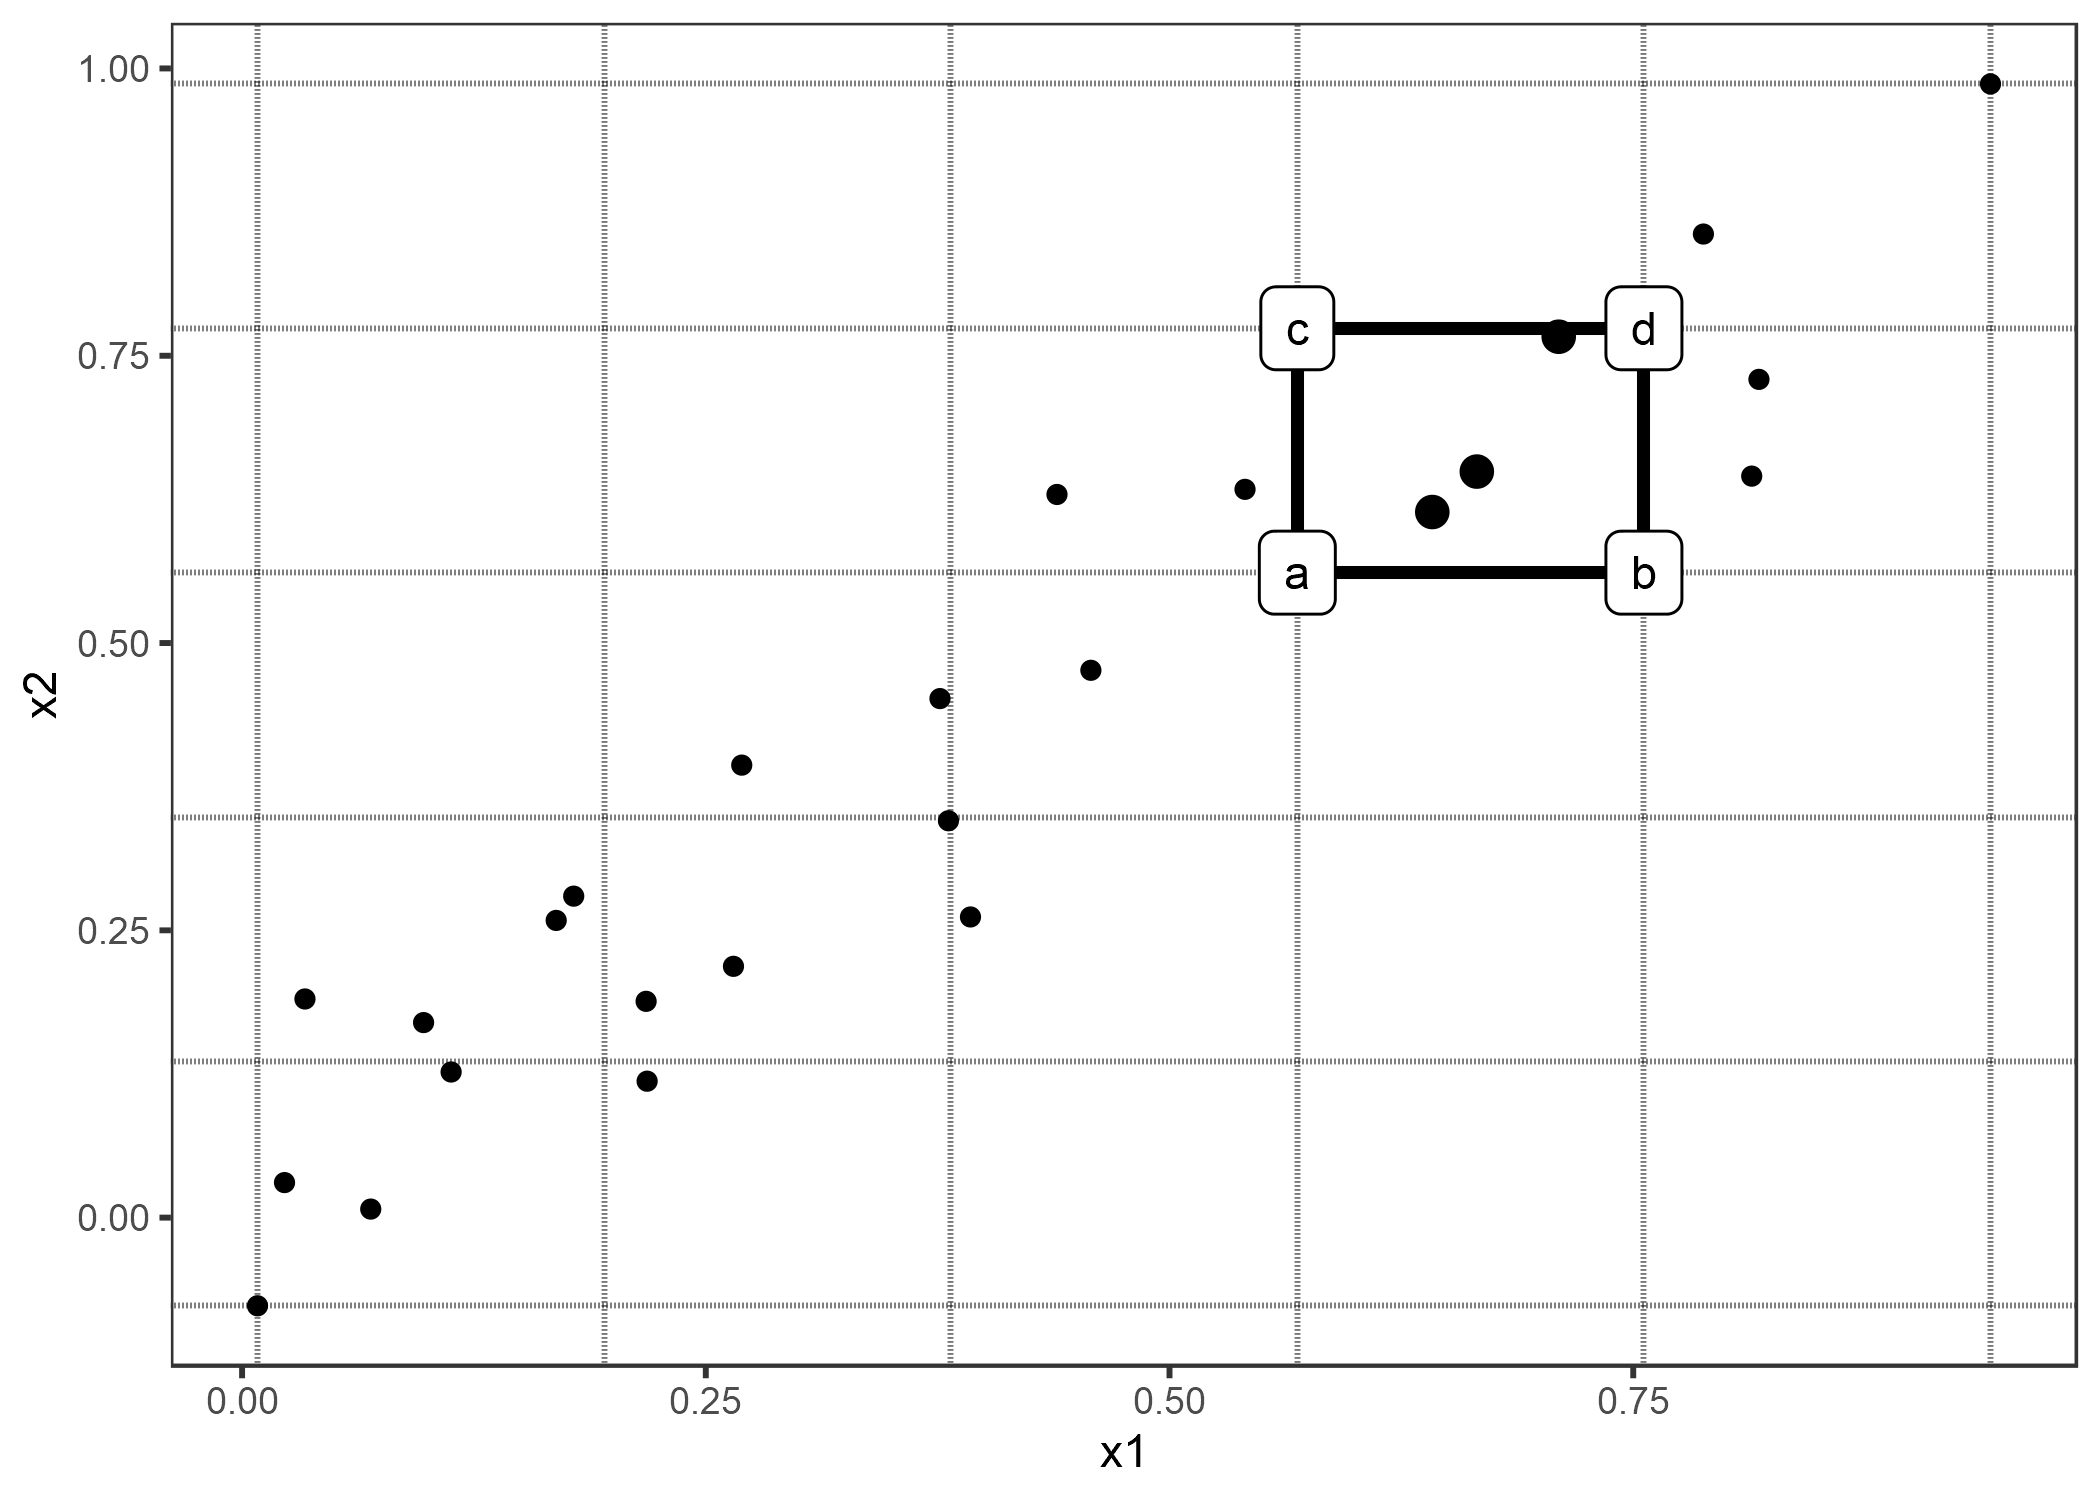 Cálculo de 2D-ALE. Colocamos una cuadrícula sobre las dos características. En cada celda de la cuadrícula calculamos las diferencias de segundo orden para todas las instancias dentro. Primero reemplazamos los valores de x1 y x2 con los valores de las esquinas de las celdas. Si a, b, c y d representan las predicciones de "esquina" de una instancia manipulada (como se indica en el gráfico), entonces la diferencia de segundo orden es (d - c) - (b - a). La diferencia media de segundo orden en cada celda se acumula sobre la cuadrícula y se centra.